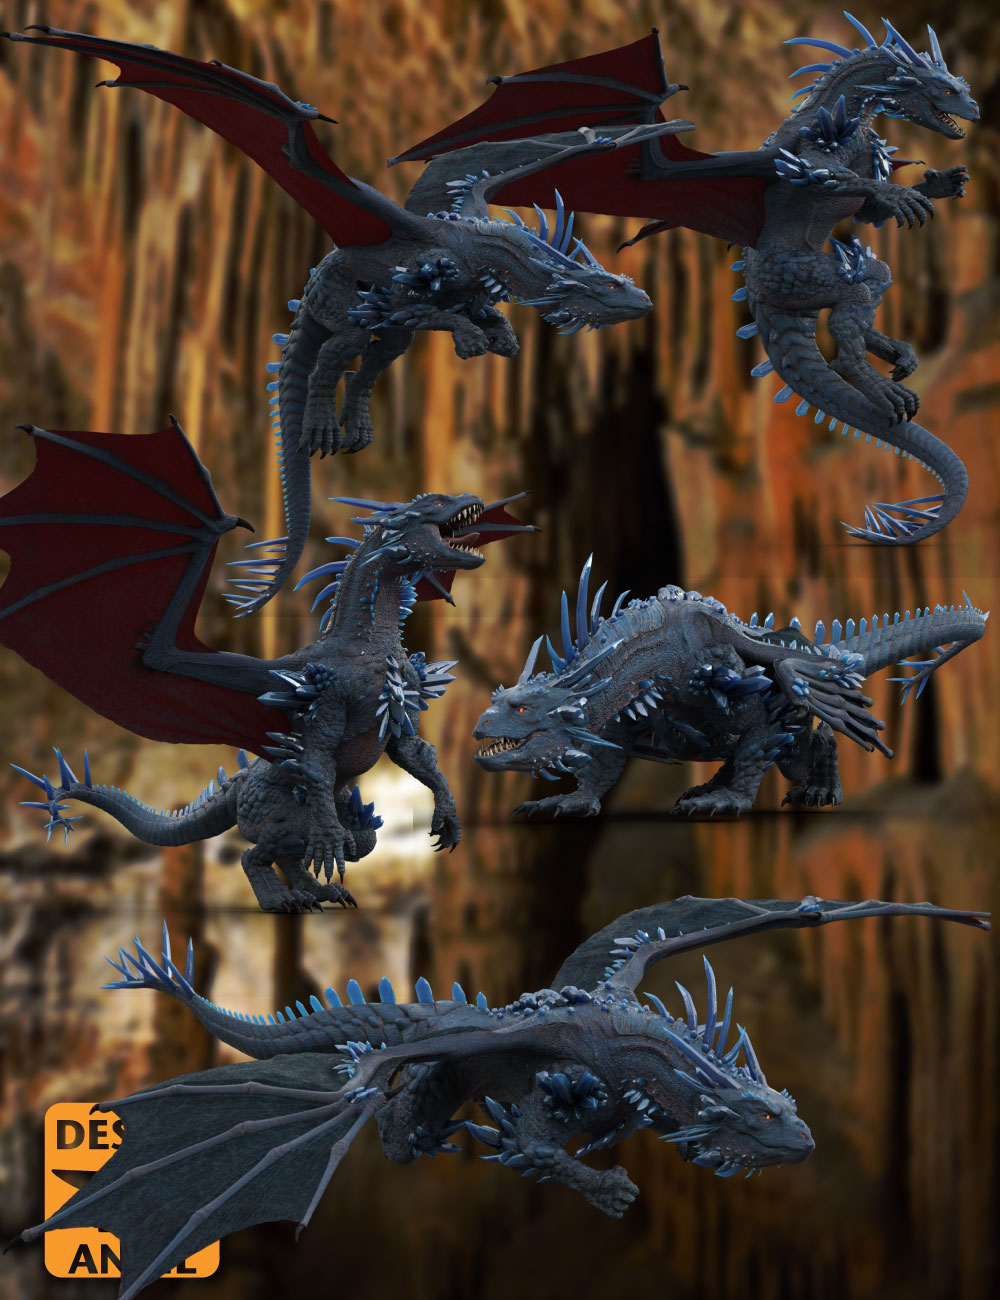 DA Crystal Dragon Pose Set by: Design Anvil, 3D Models by Daz 3D